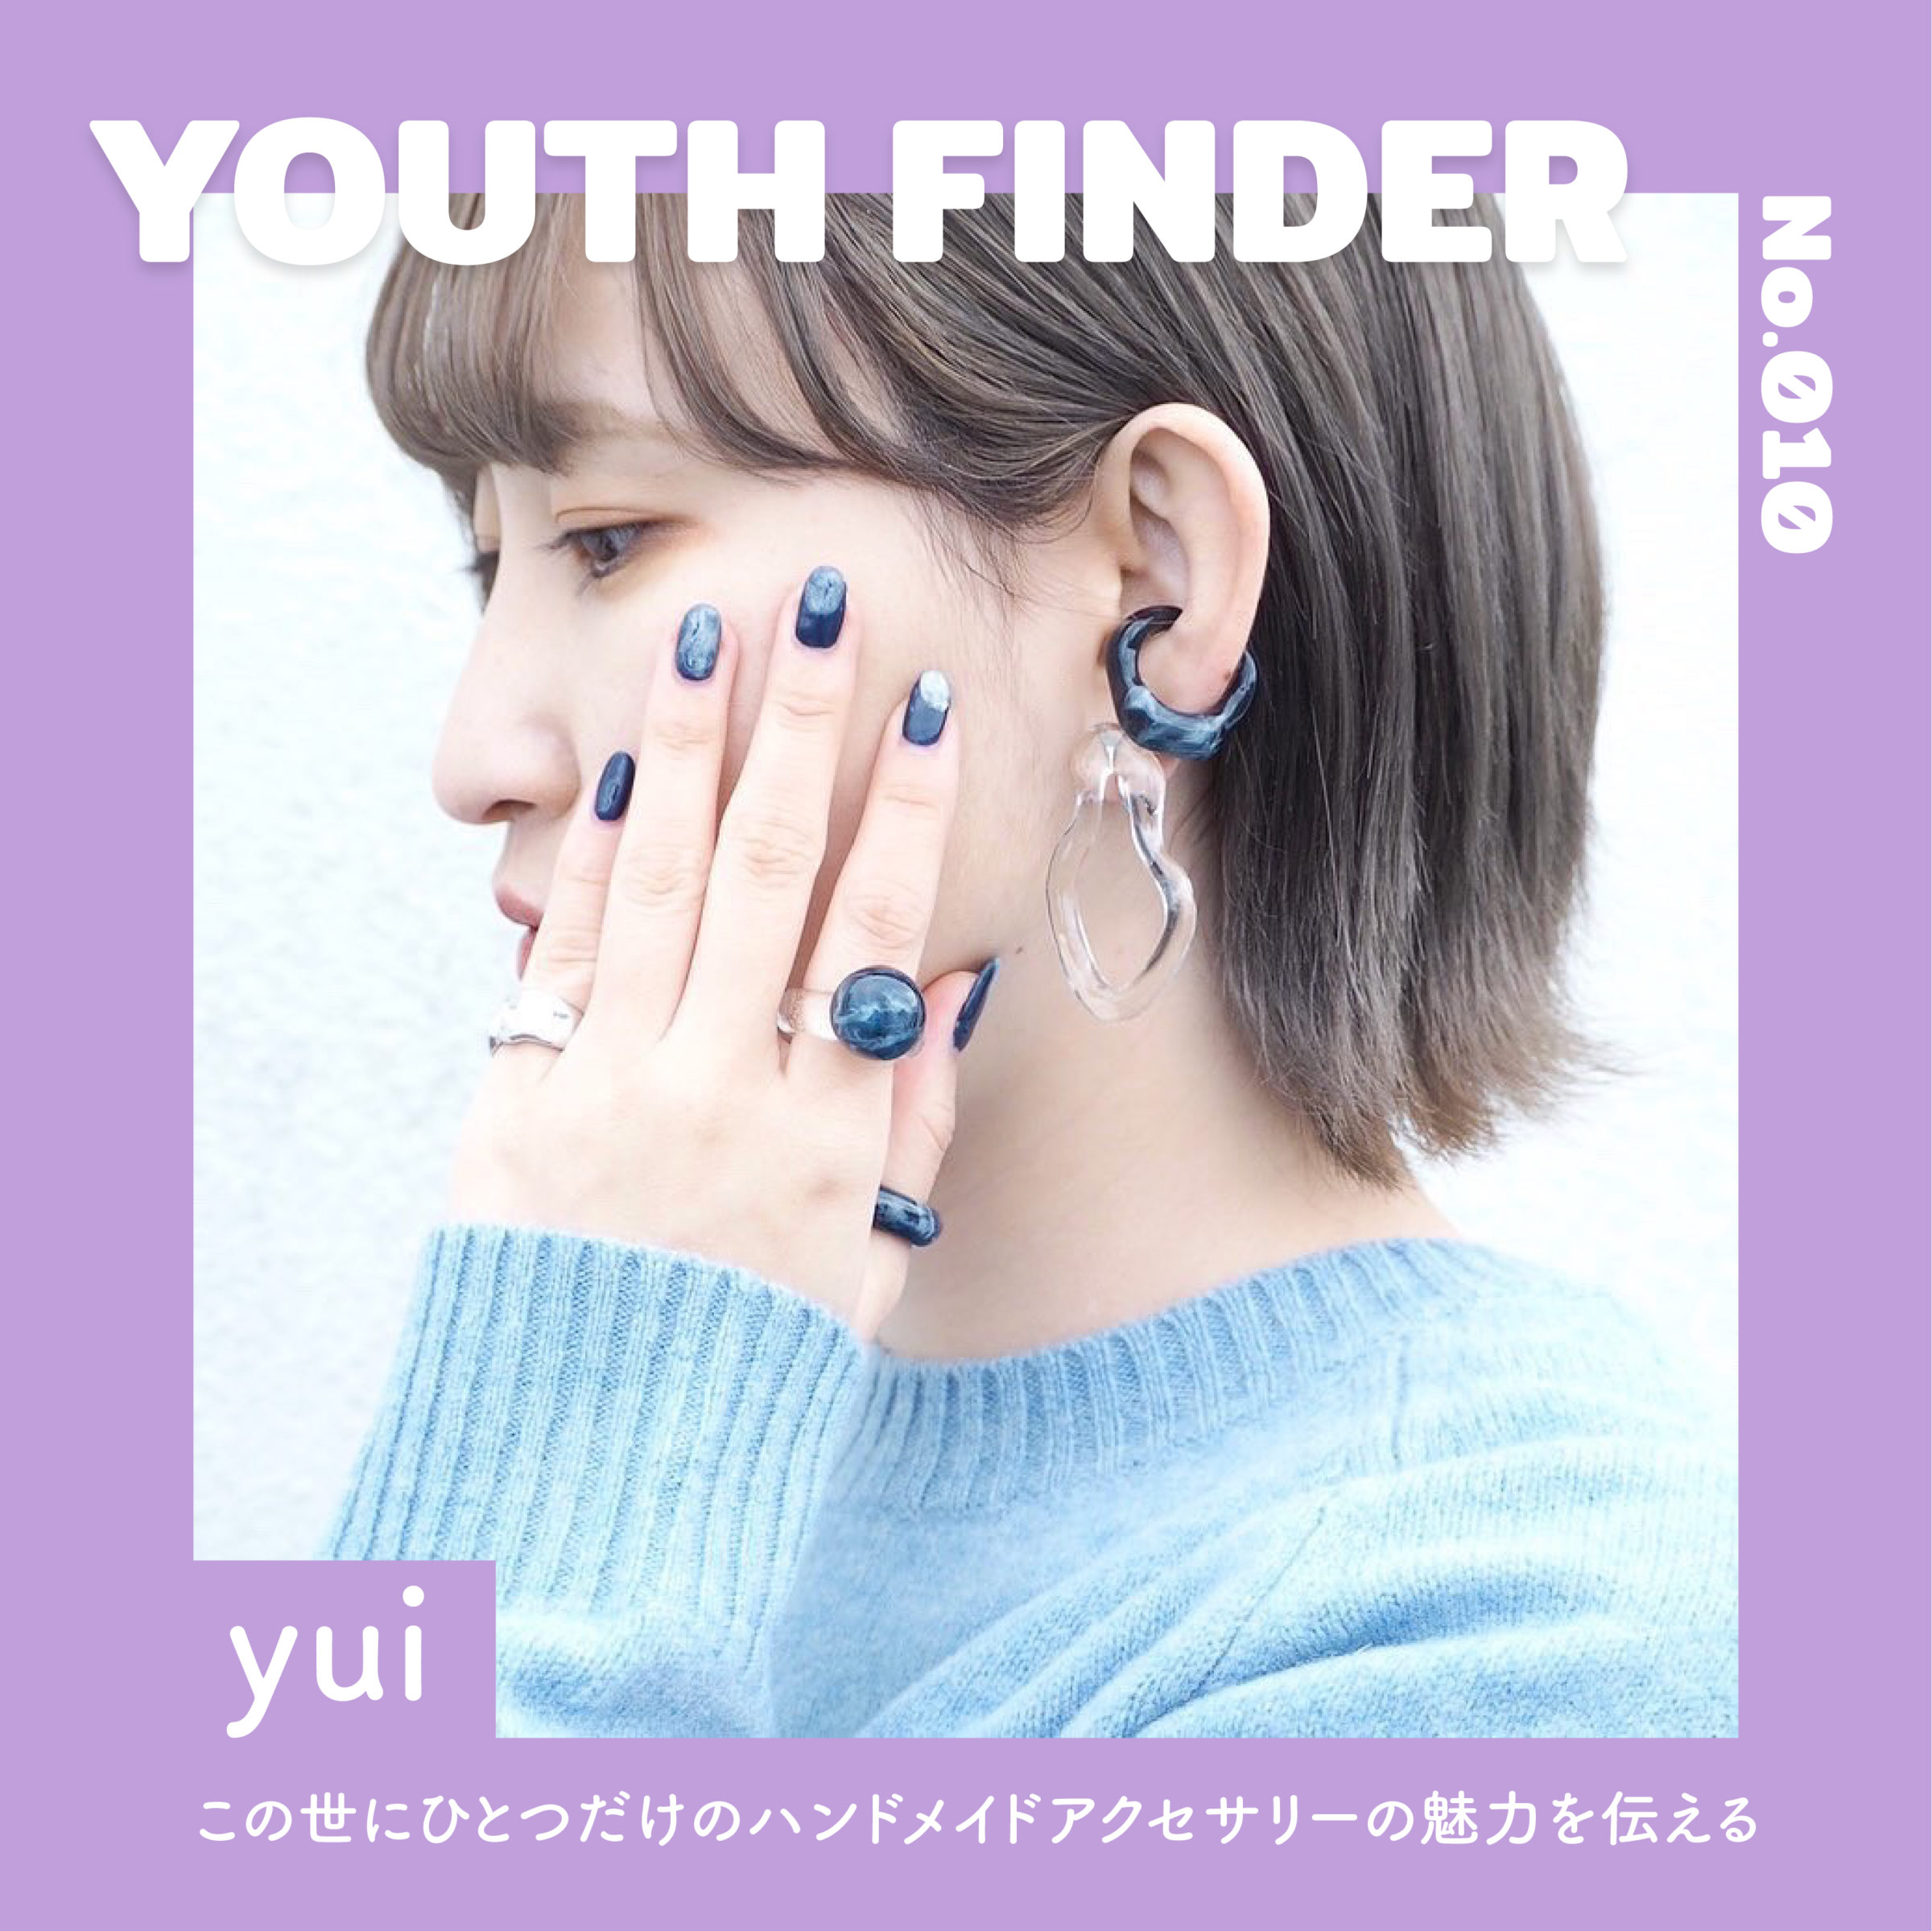 ハンドメイドアクセサリーの制作をおこなう、yuiさん【Youth Finder】の画像